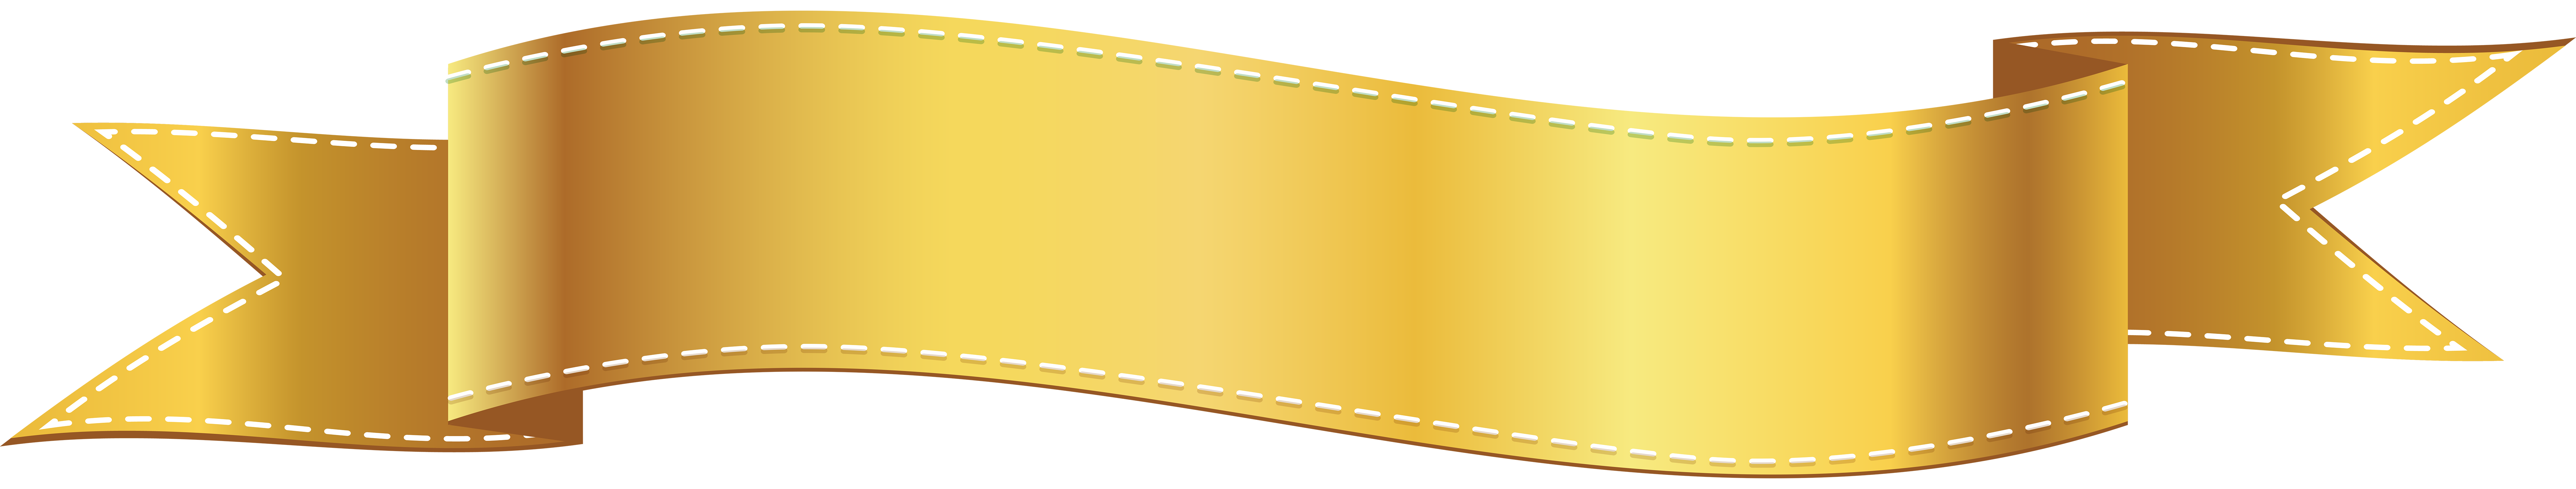 Golden Banner PNG Clip Art Image 